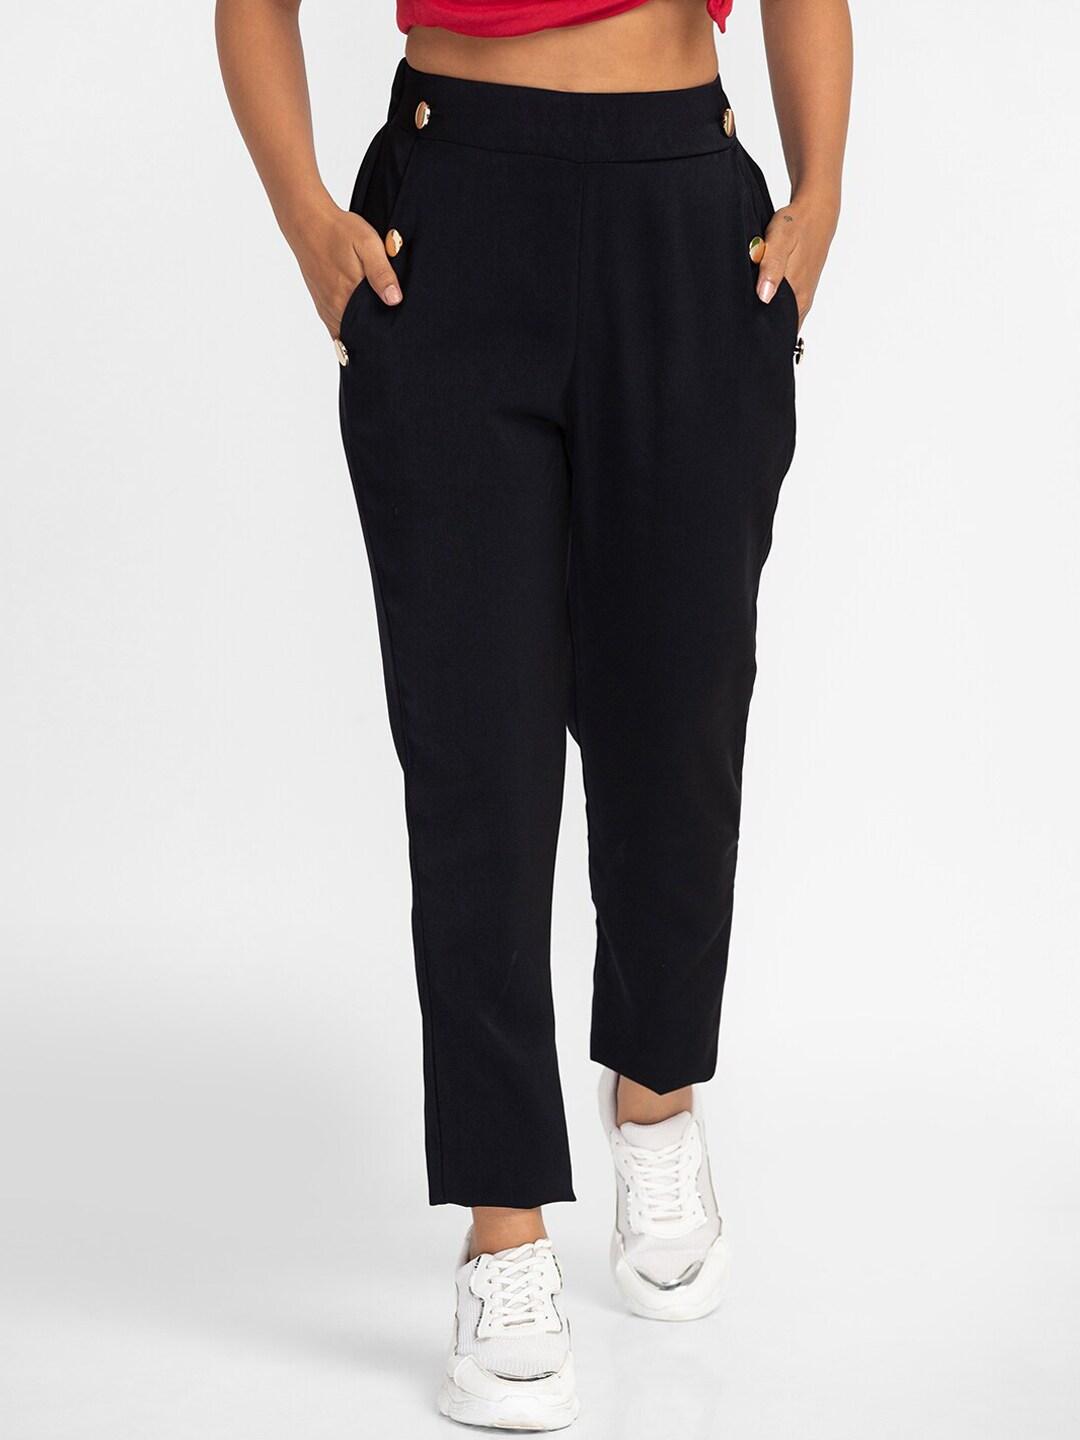 globus-women-black-slim-fit-regular-trousers